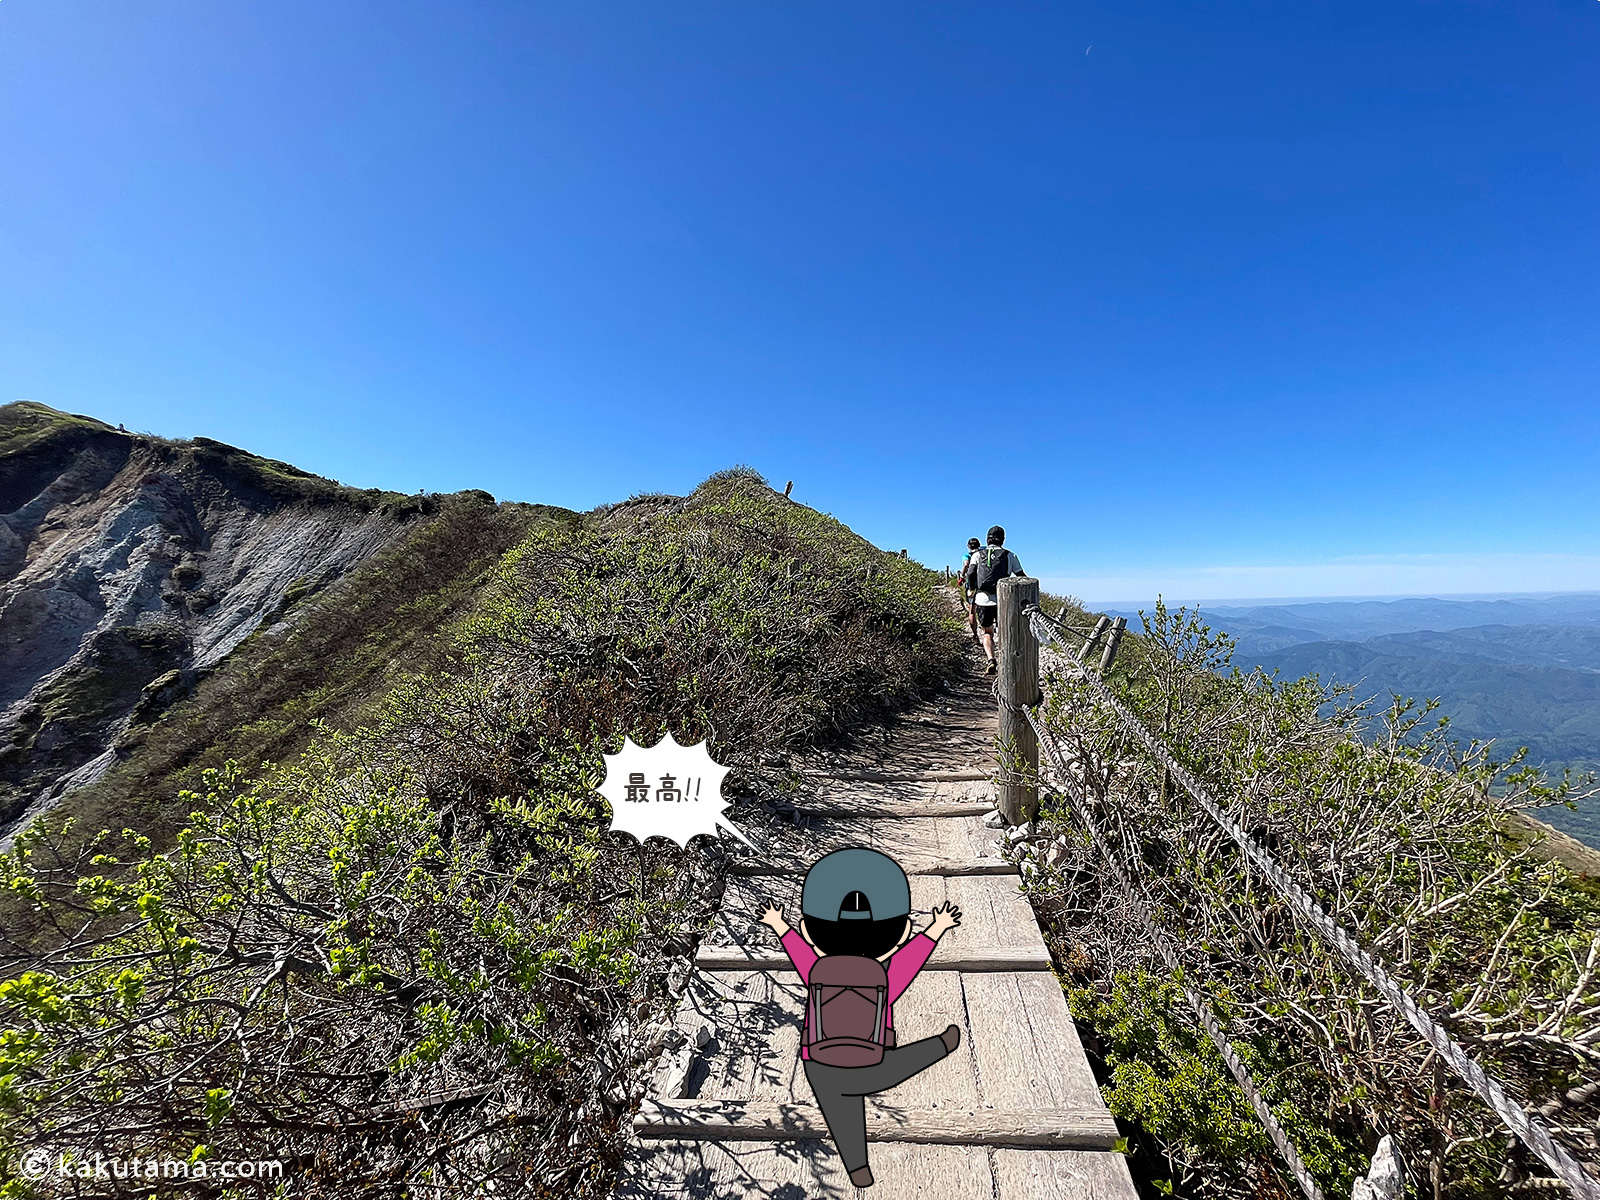 鳥取大山の木道を歩く写真と登山者のイラスト